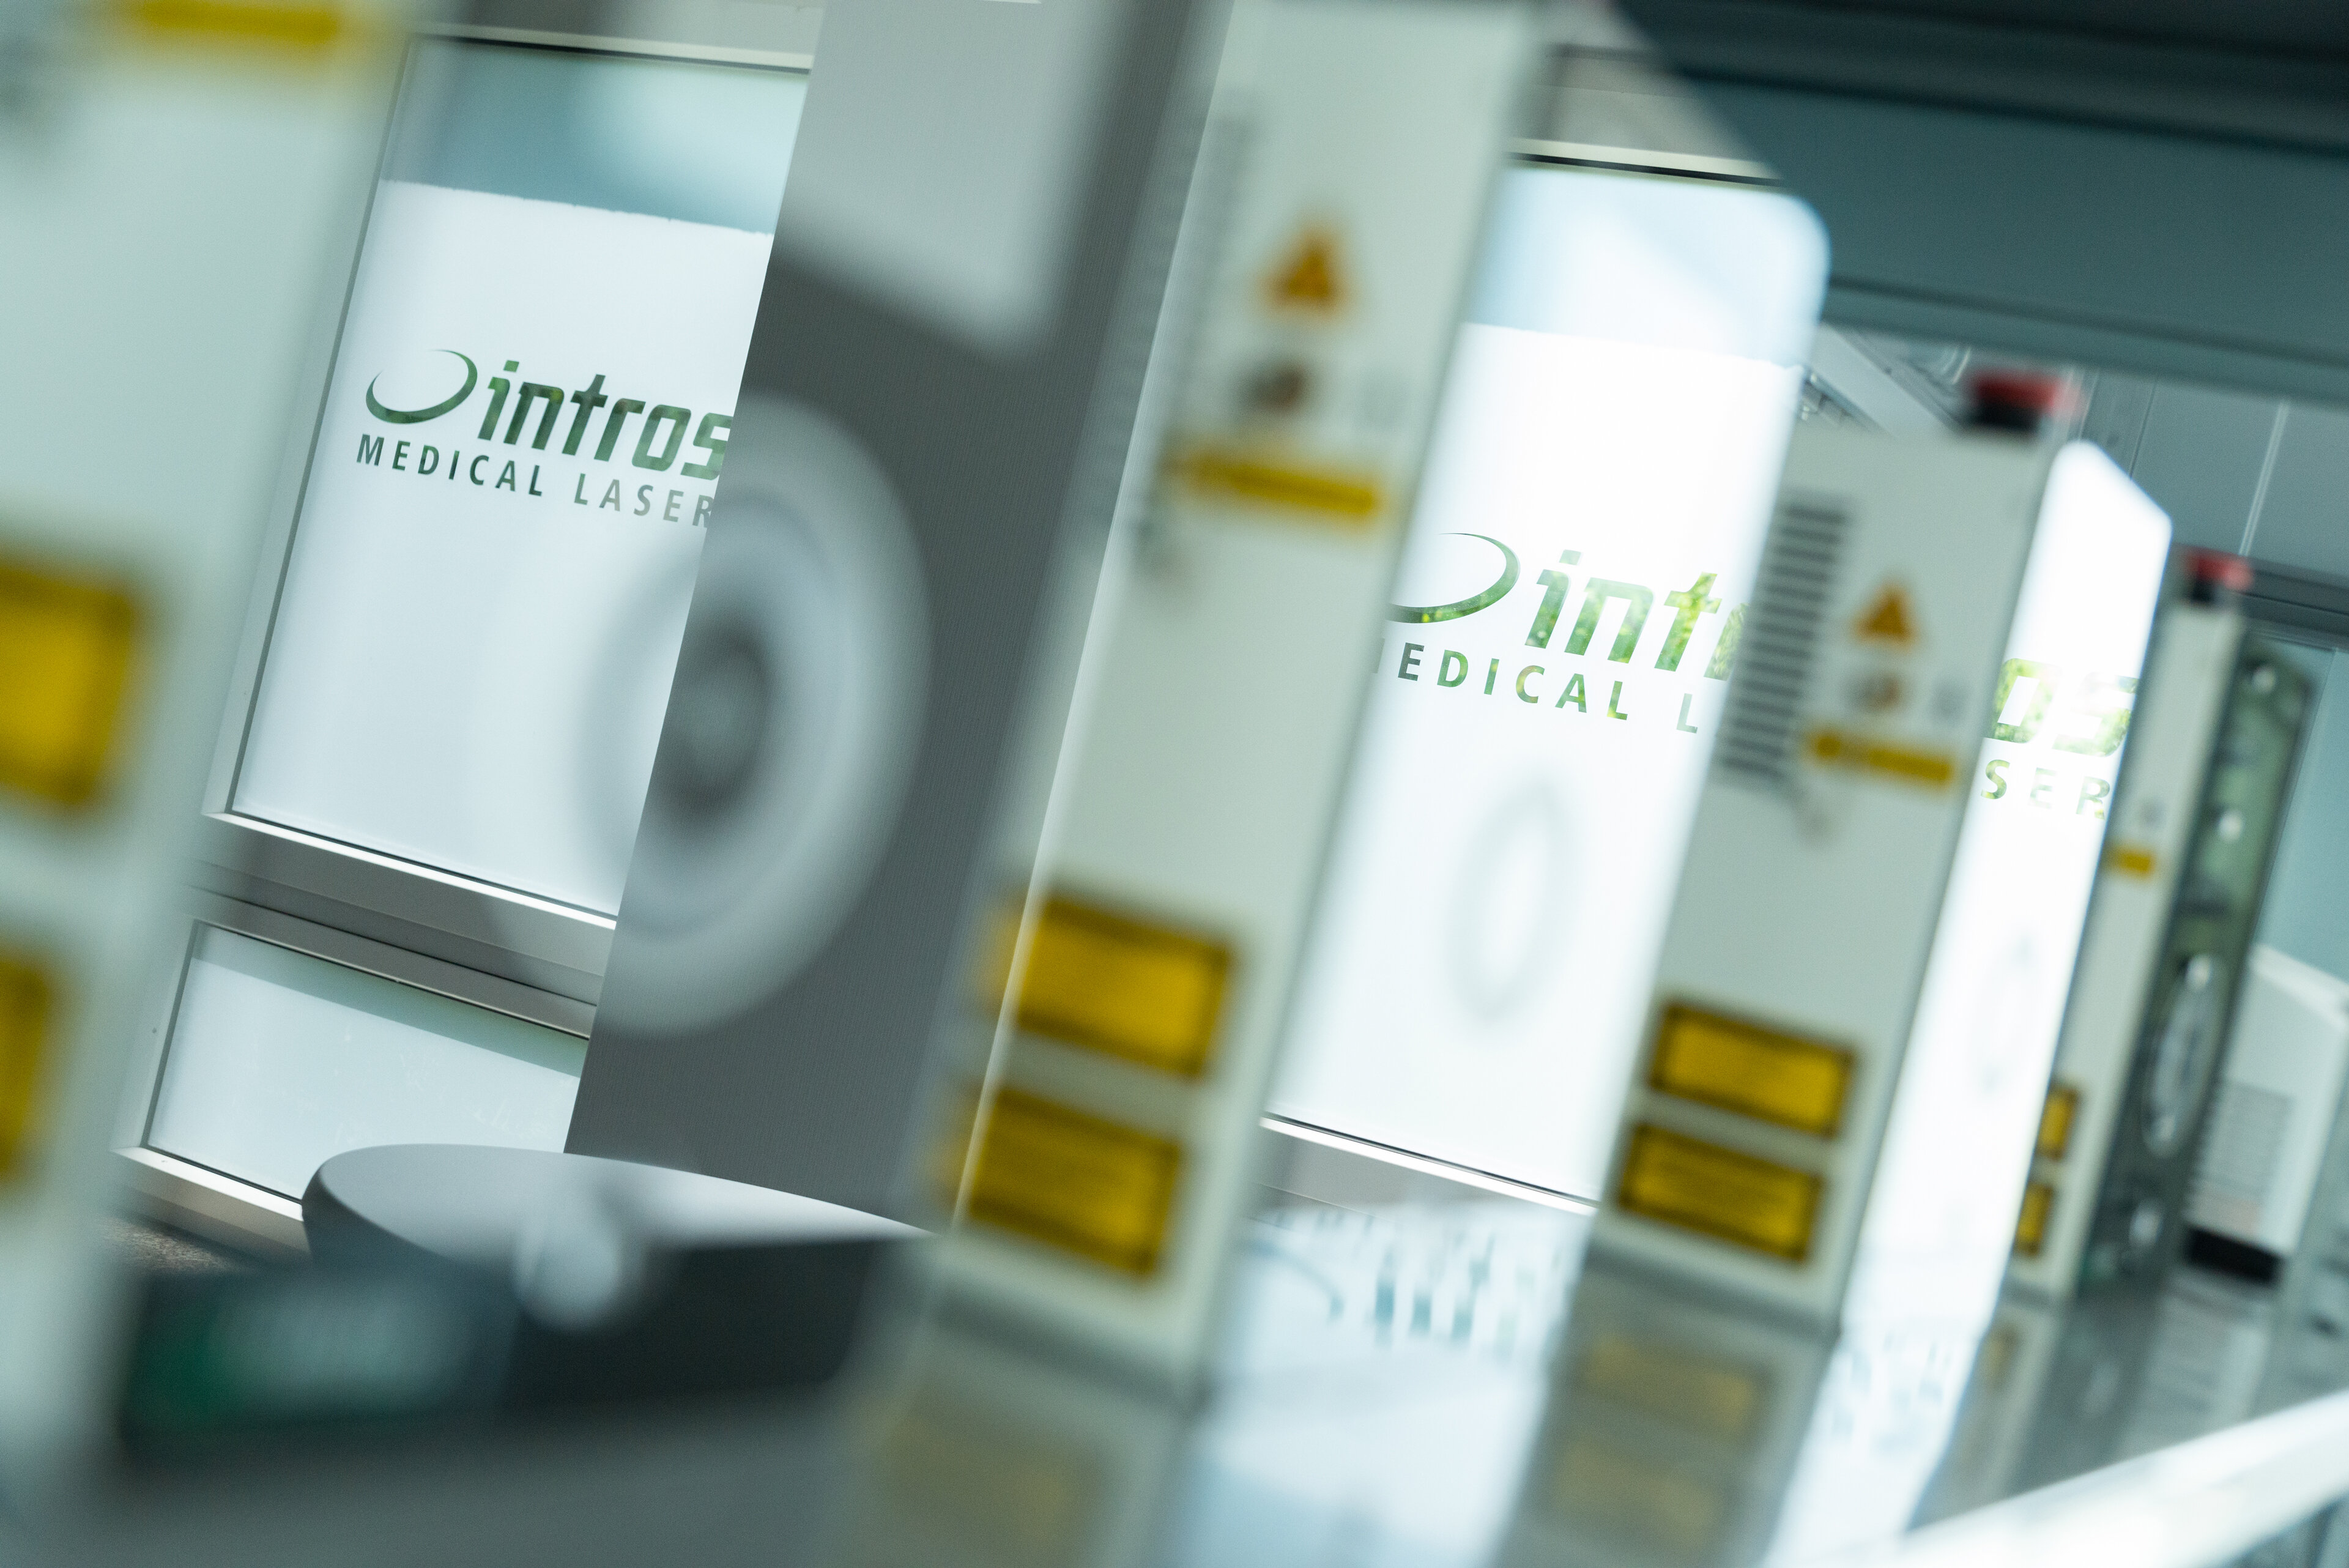 Spiegelungen in den Frontseiten der Lasergeräte der intros Medical Laser GmbH